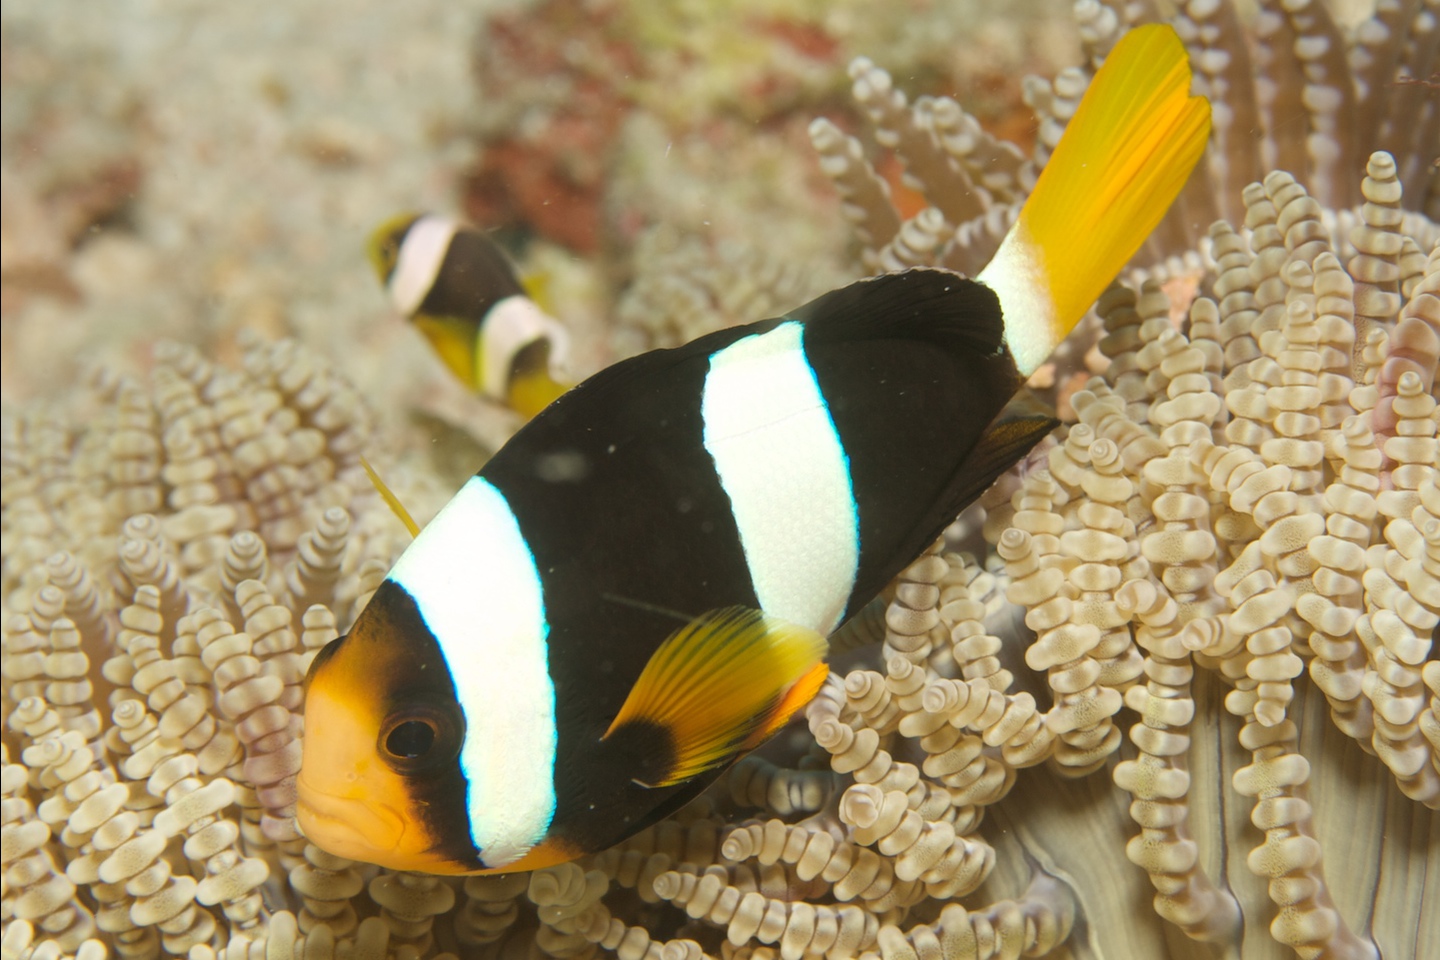 Yellowtail anemonefish